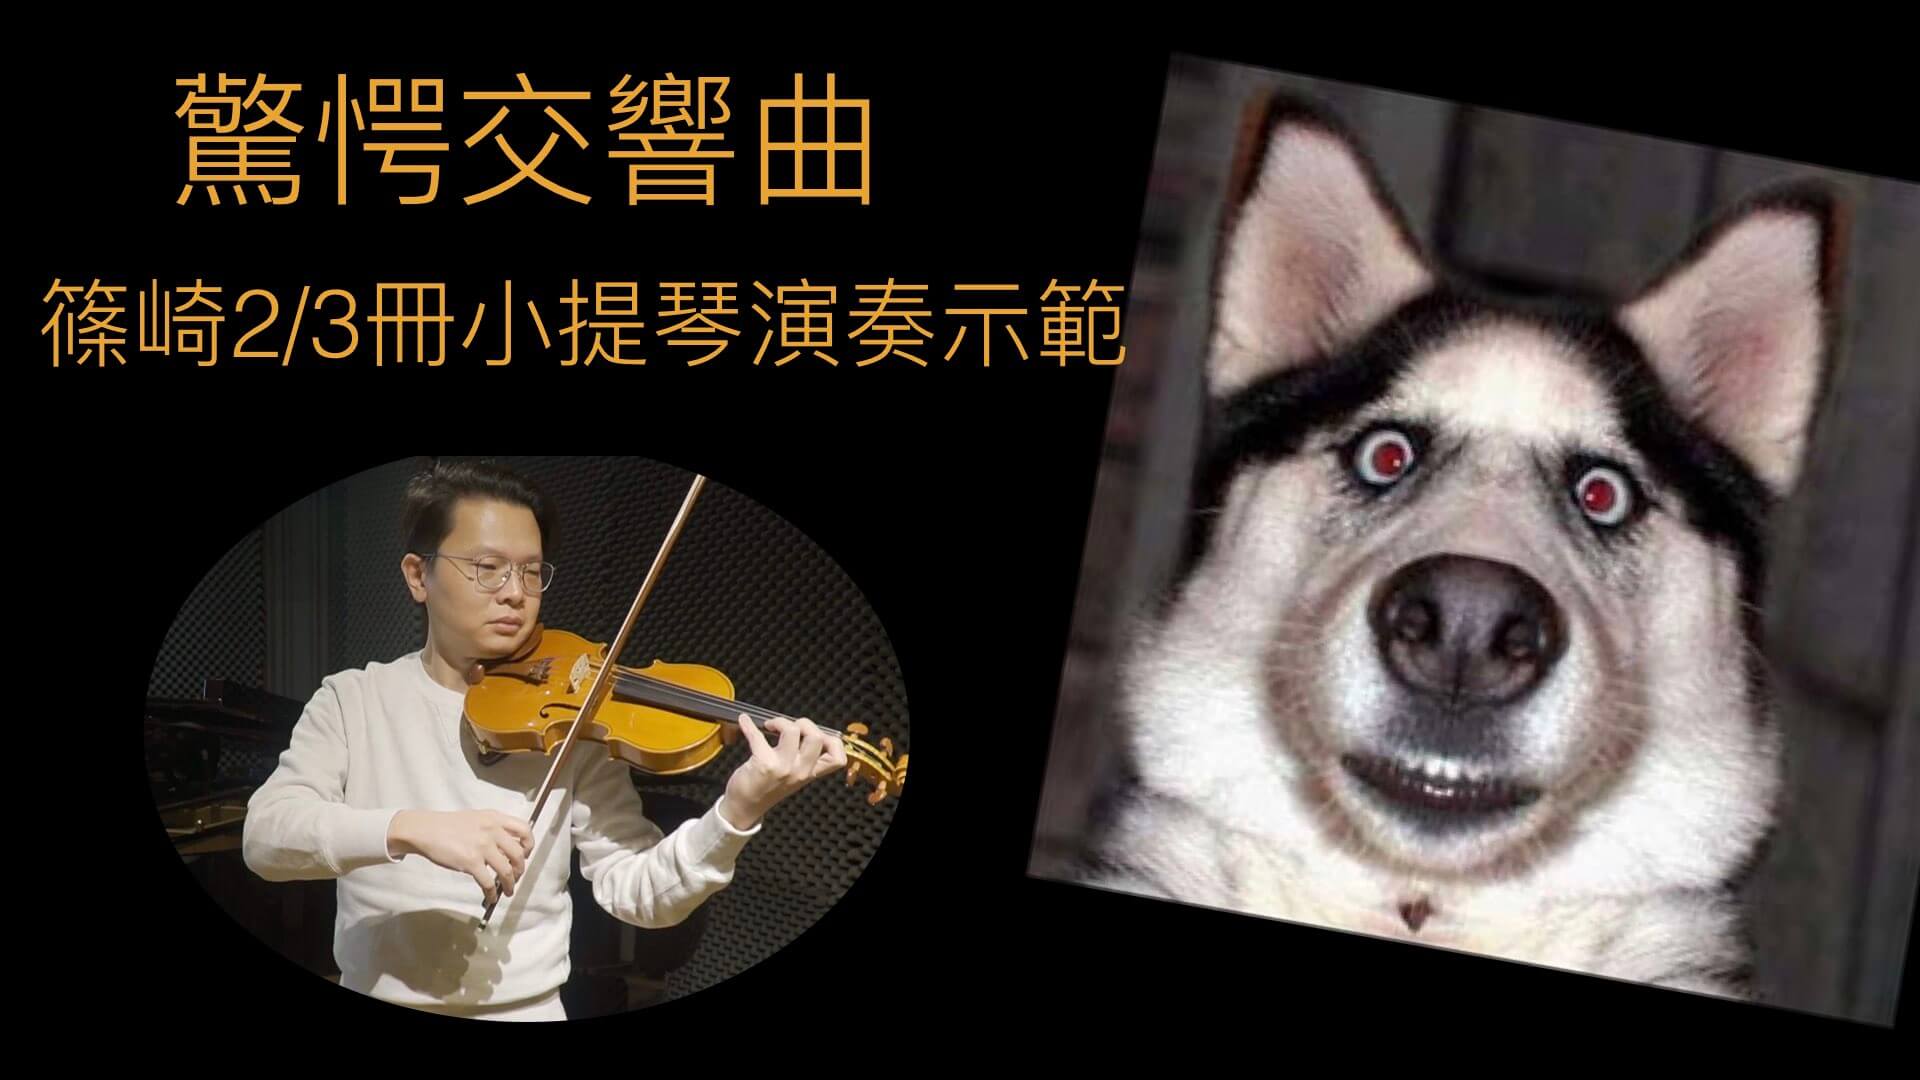 小提琴教學懶人包，學小提琴之前必看的5個重點 @
			
				張偉軒小提琴
			
		